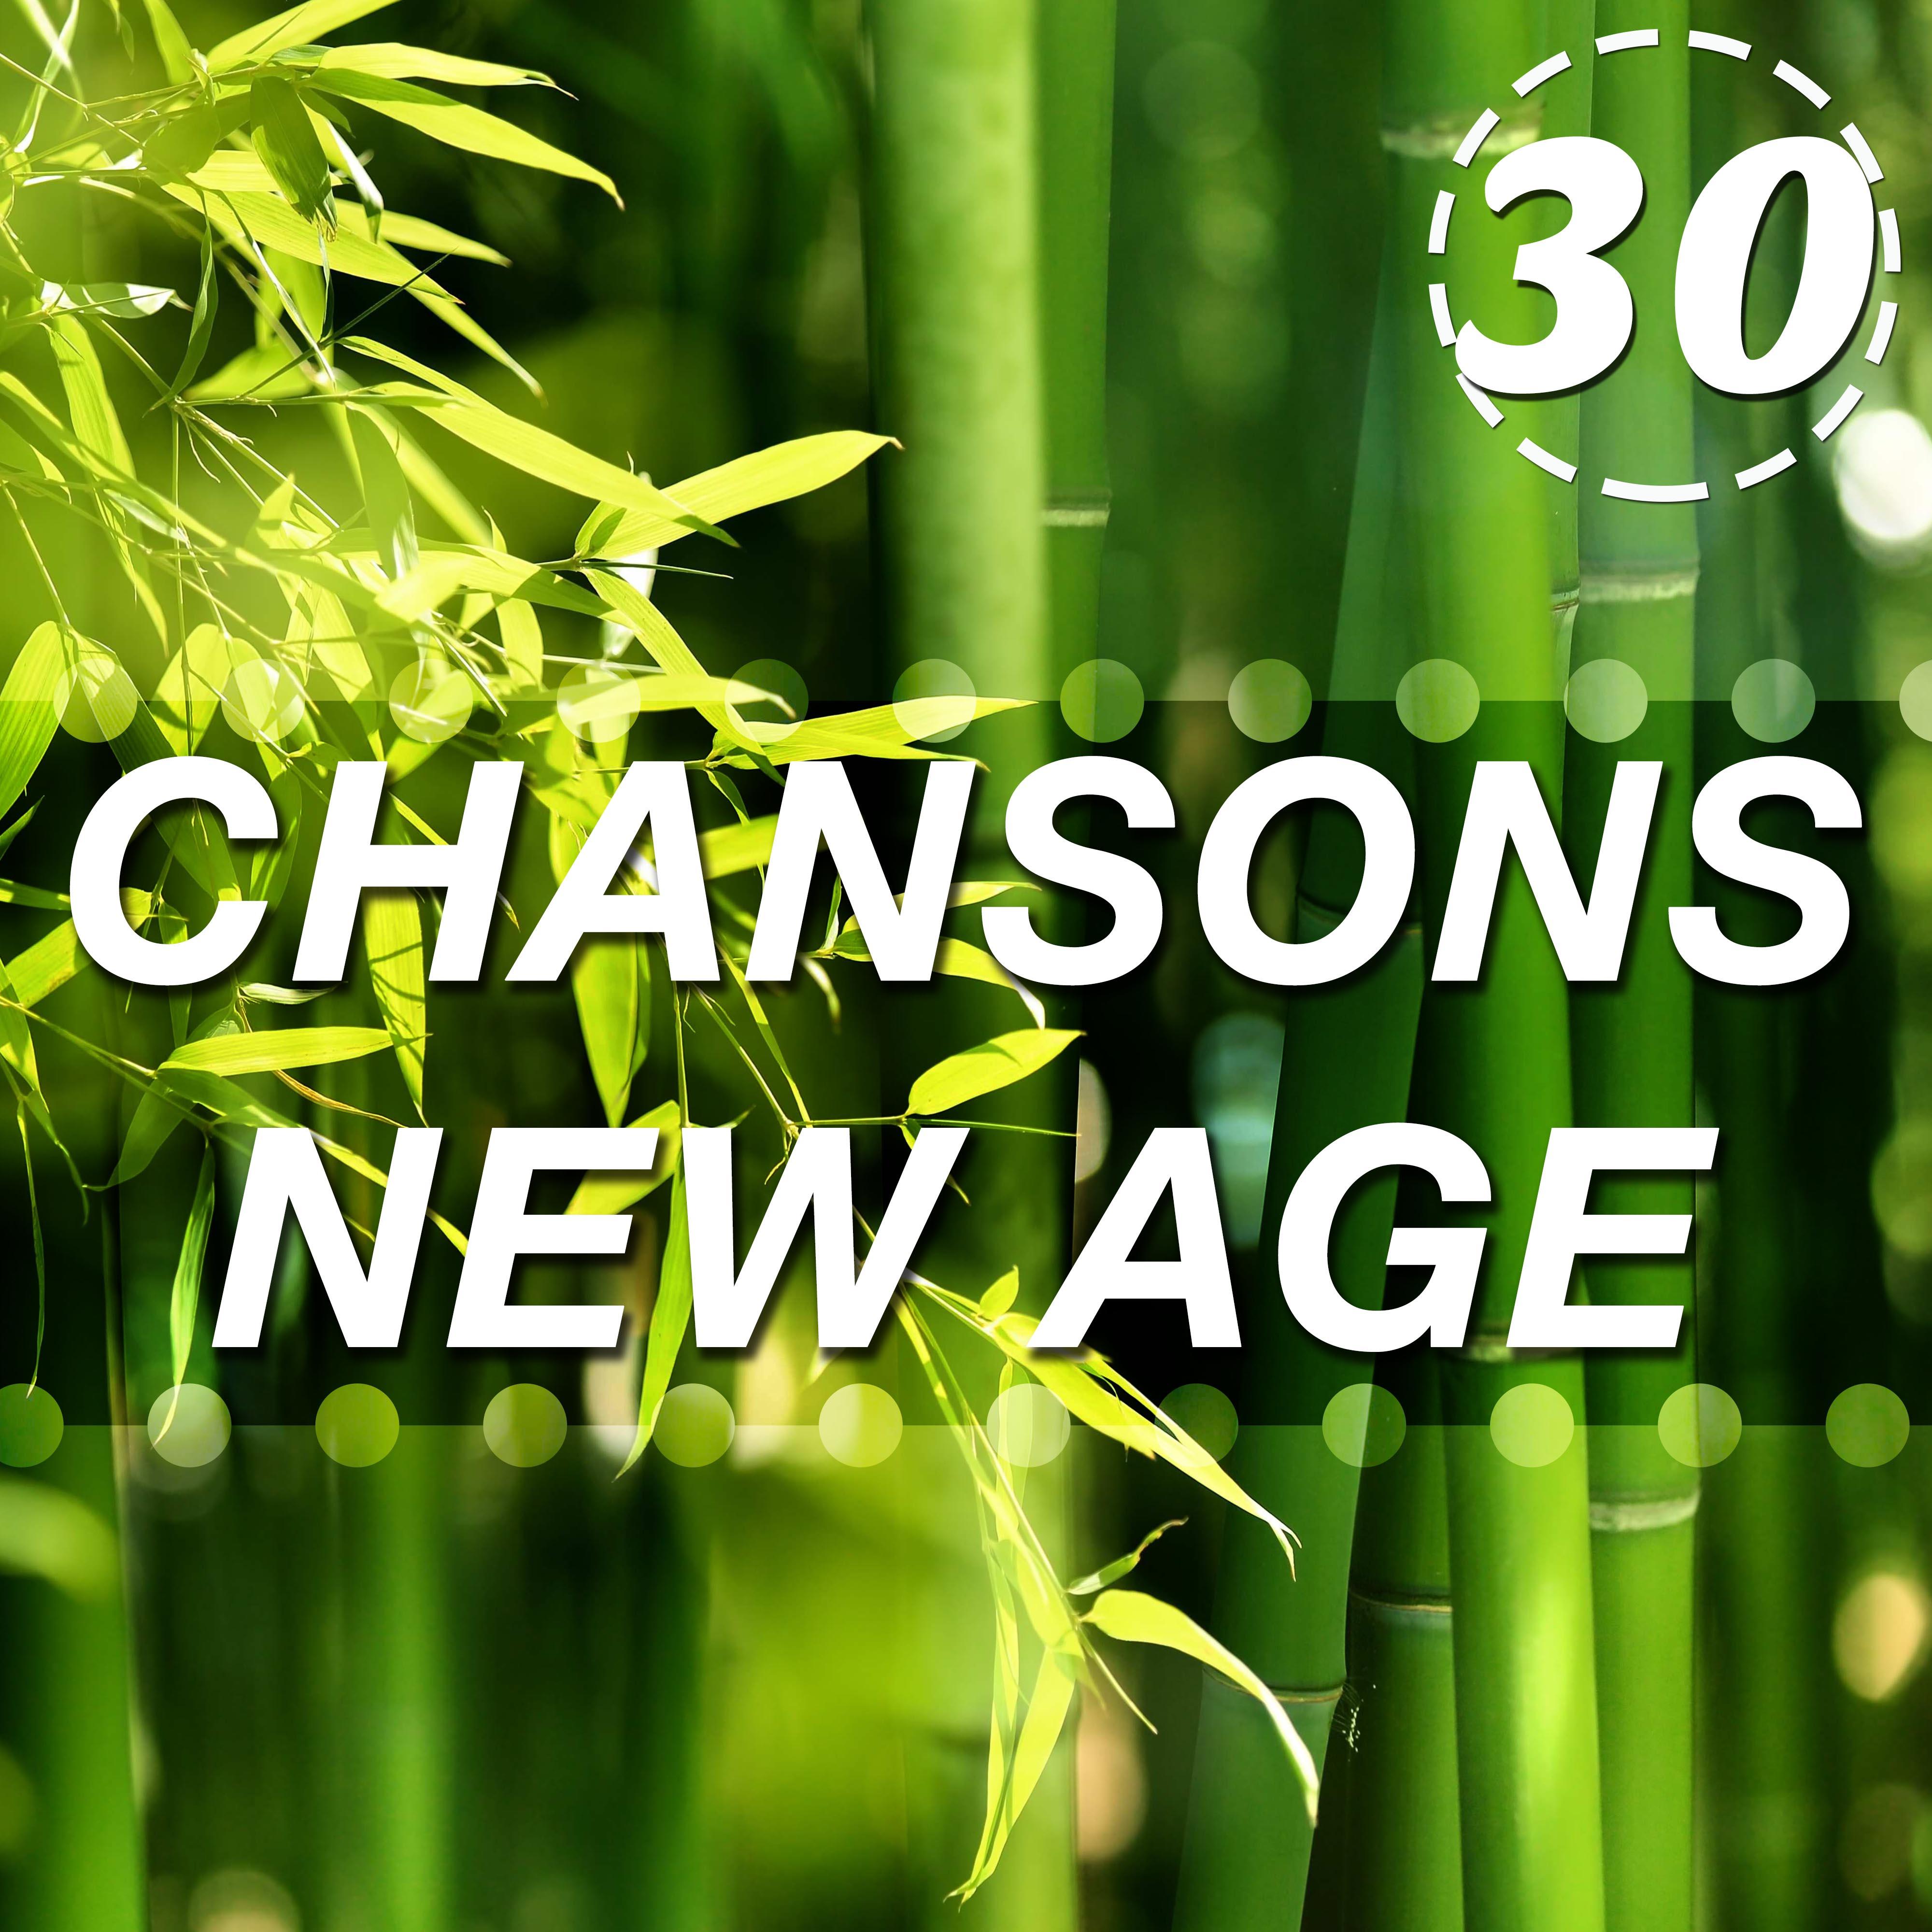 30 Chansons New Age pour se De tendre Vraiment  Ils comprennent la Pluie, les Vagues de l' Oce an et d' autres Sons de la Nature